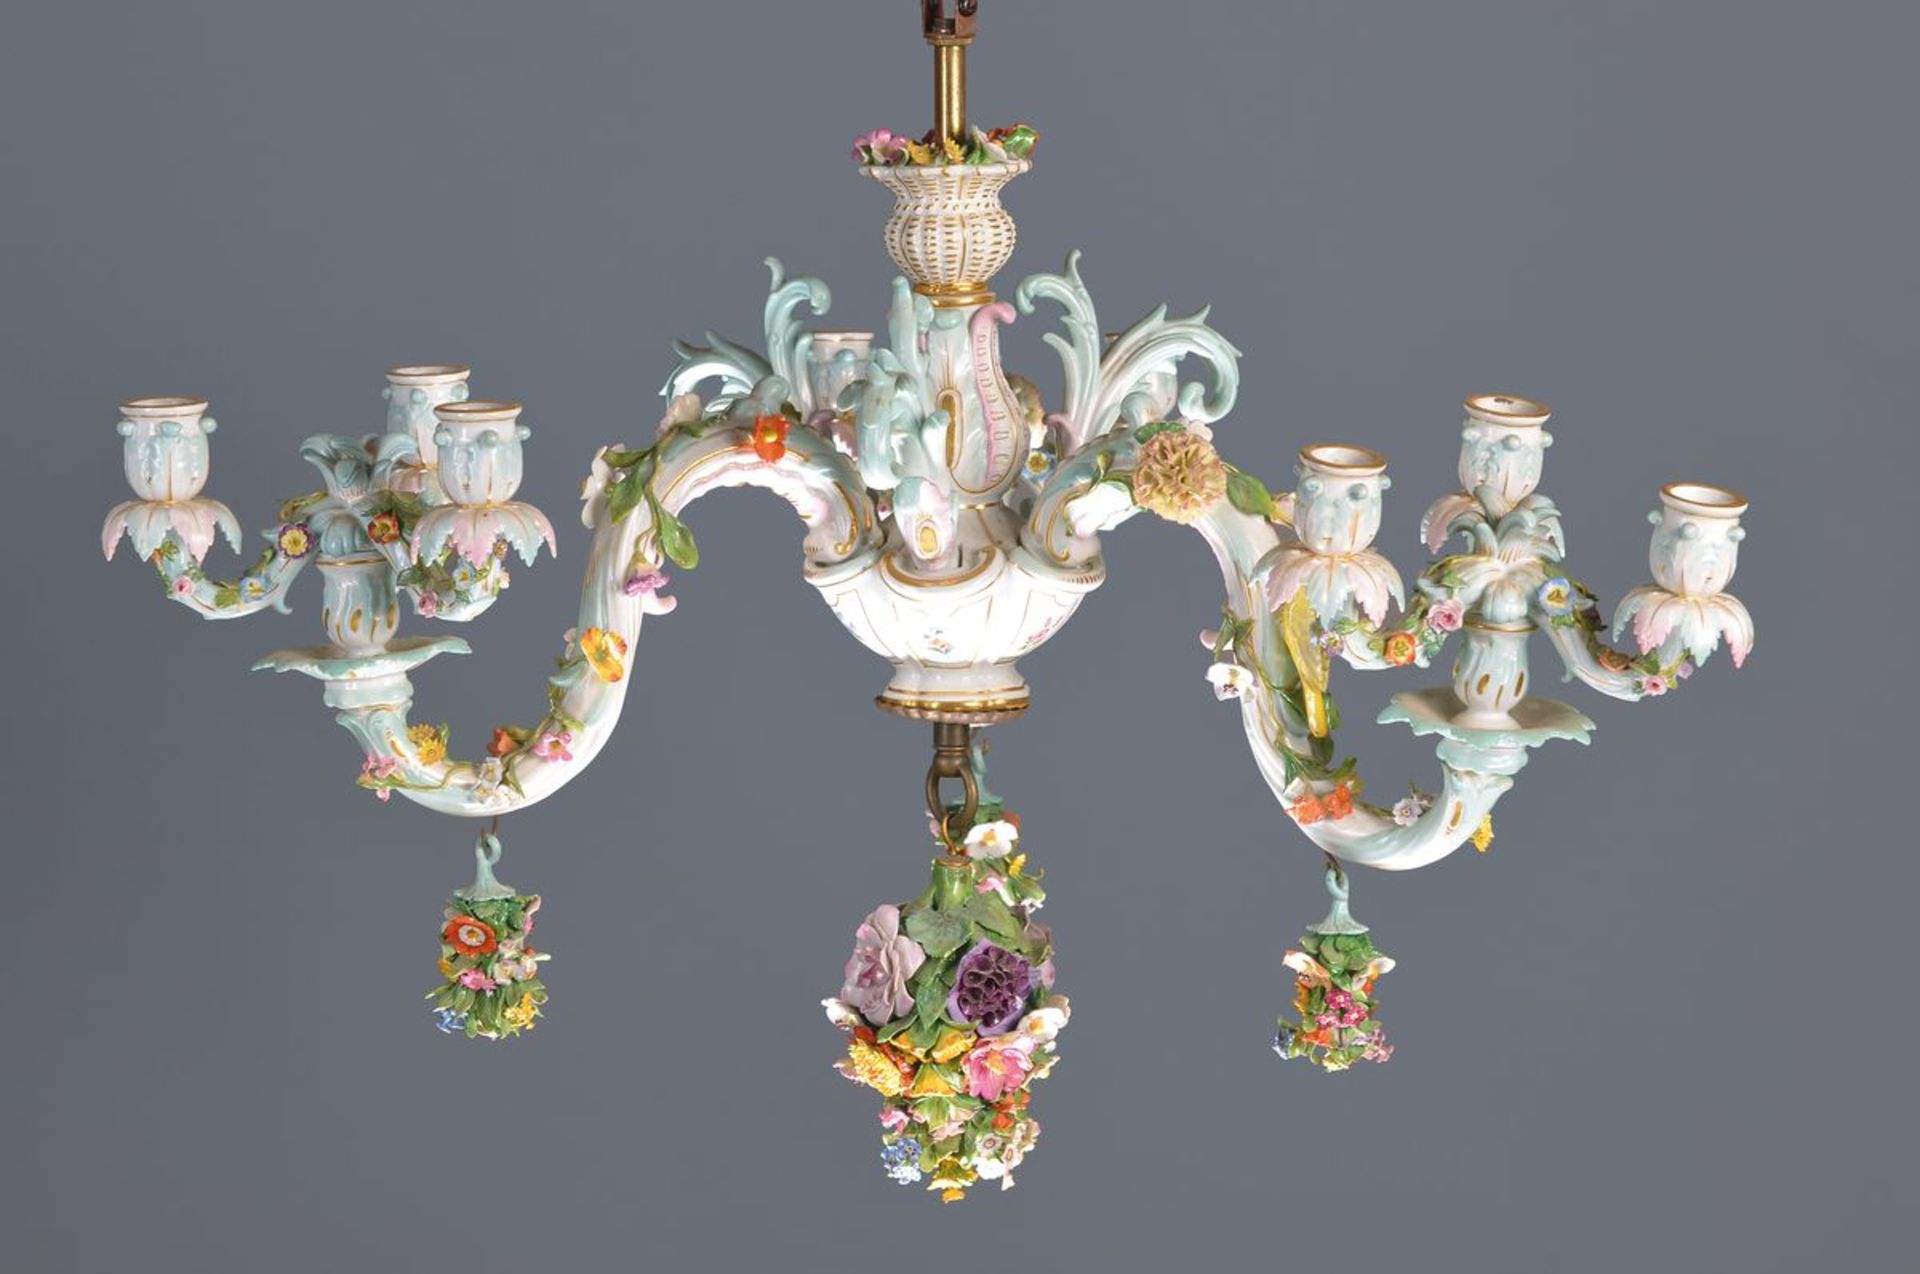 Deckenleuchter, Meissen, um 1880/90, drei Arme mit applizierten Blumen, ein Arm mit Vogel,